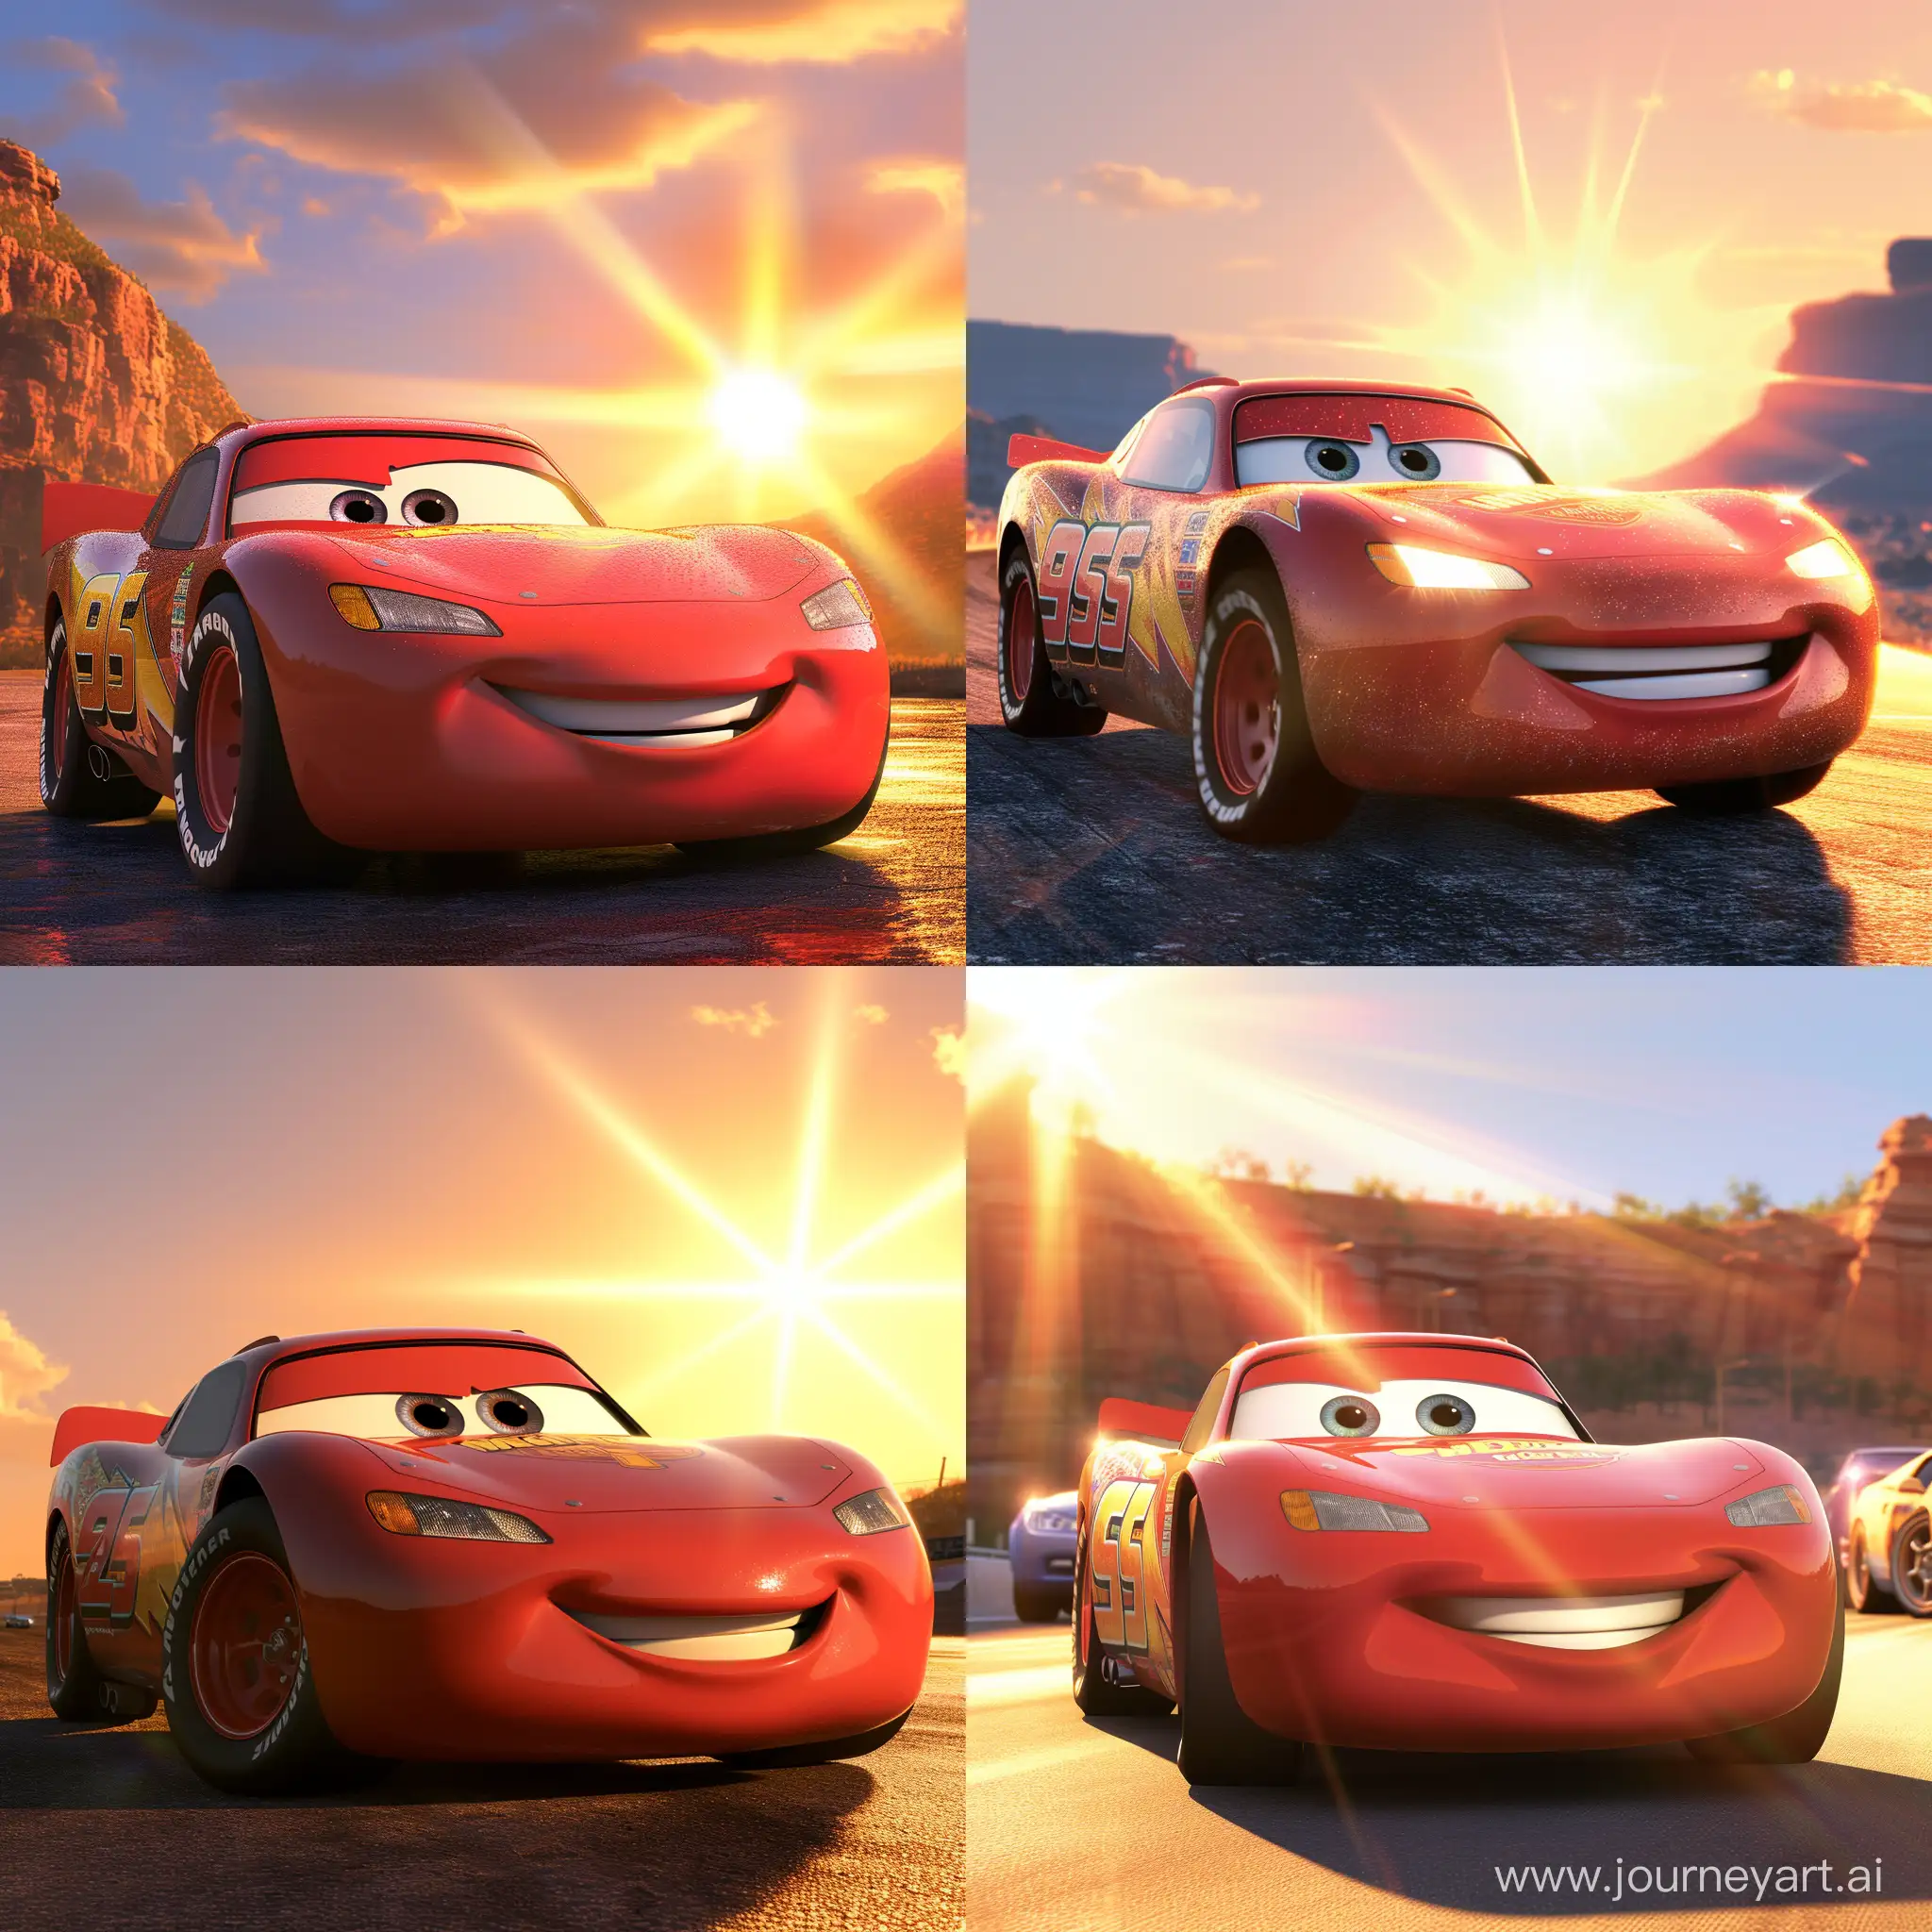 Lighting McQueen стал самой быстрой машиной, он весь сияет от лучей солнца и все хотят стать таким-же быстрым как и он